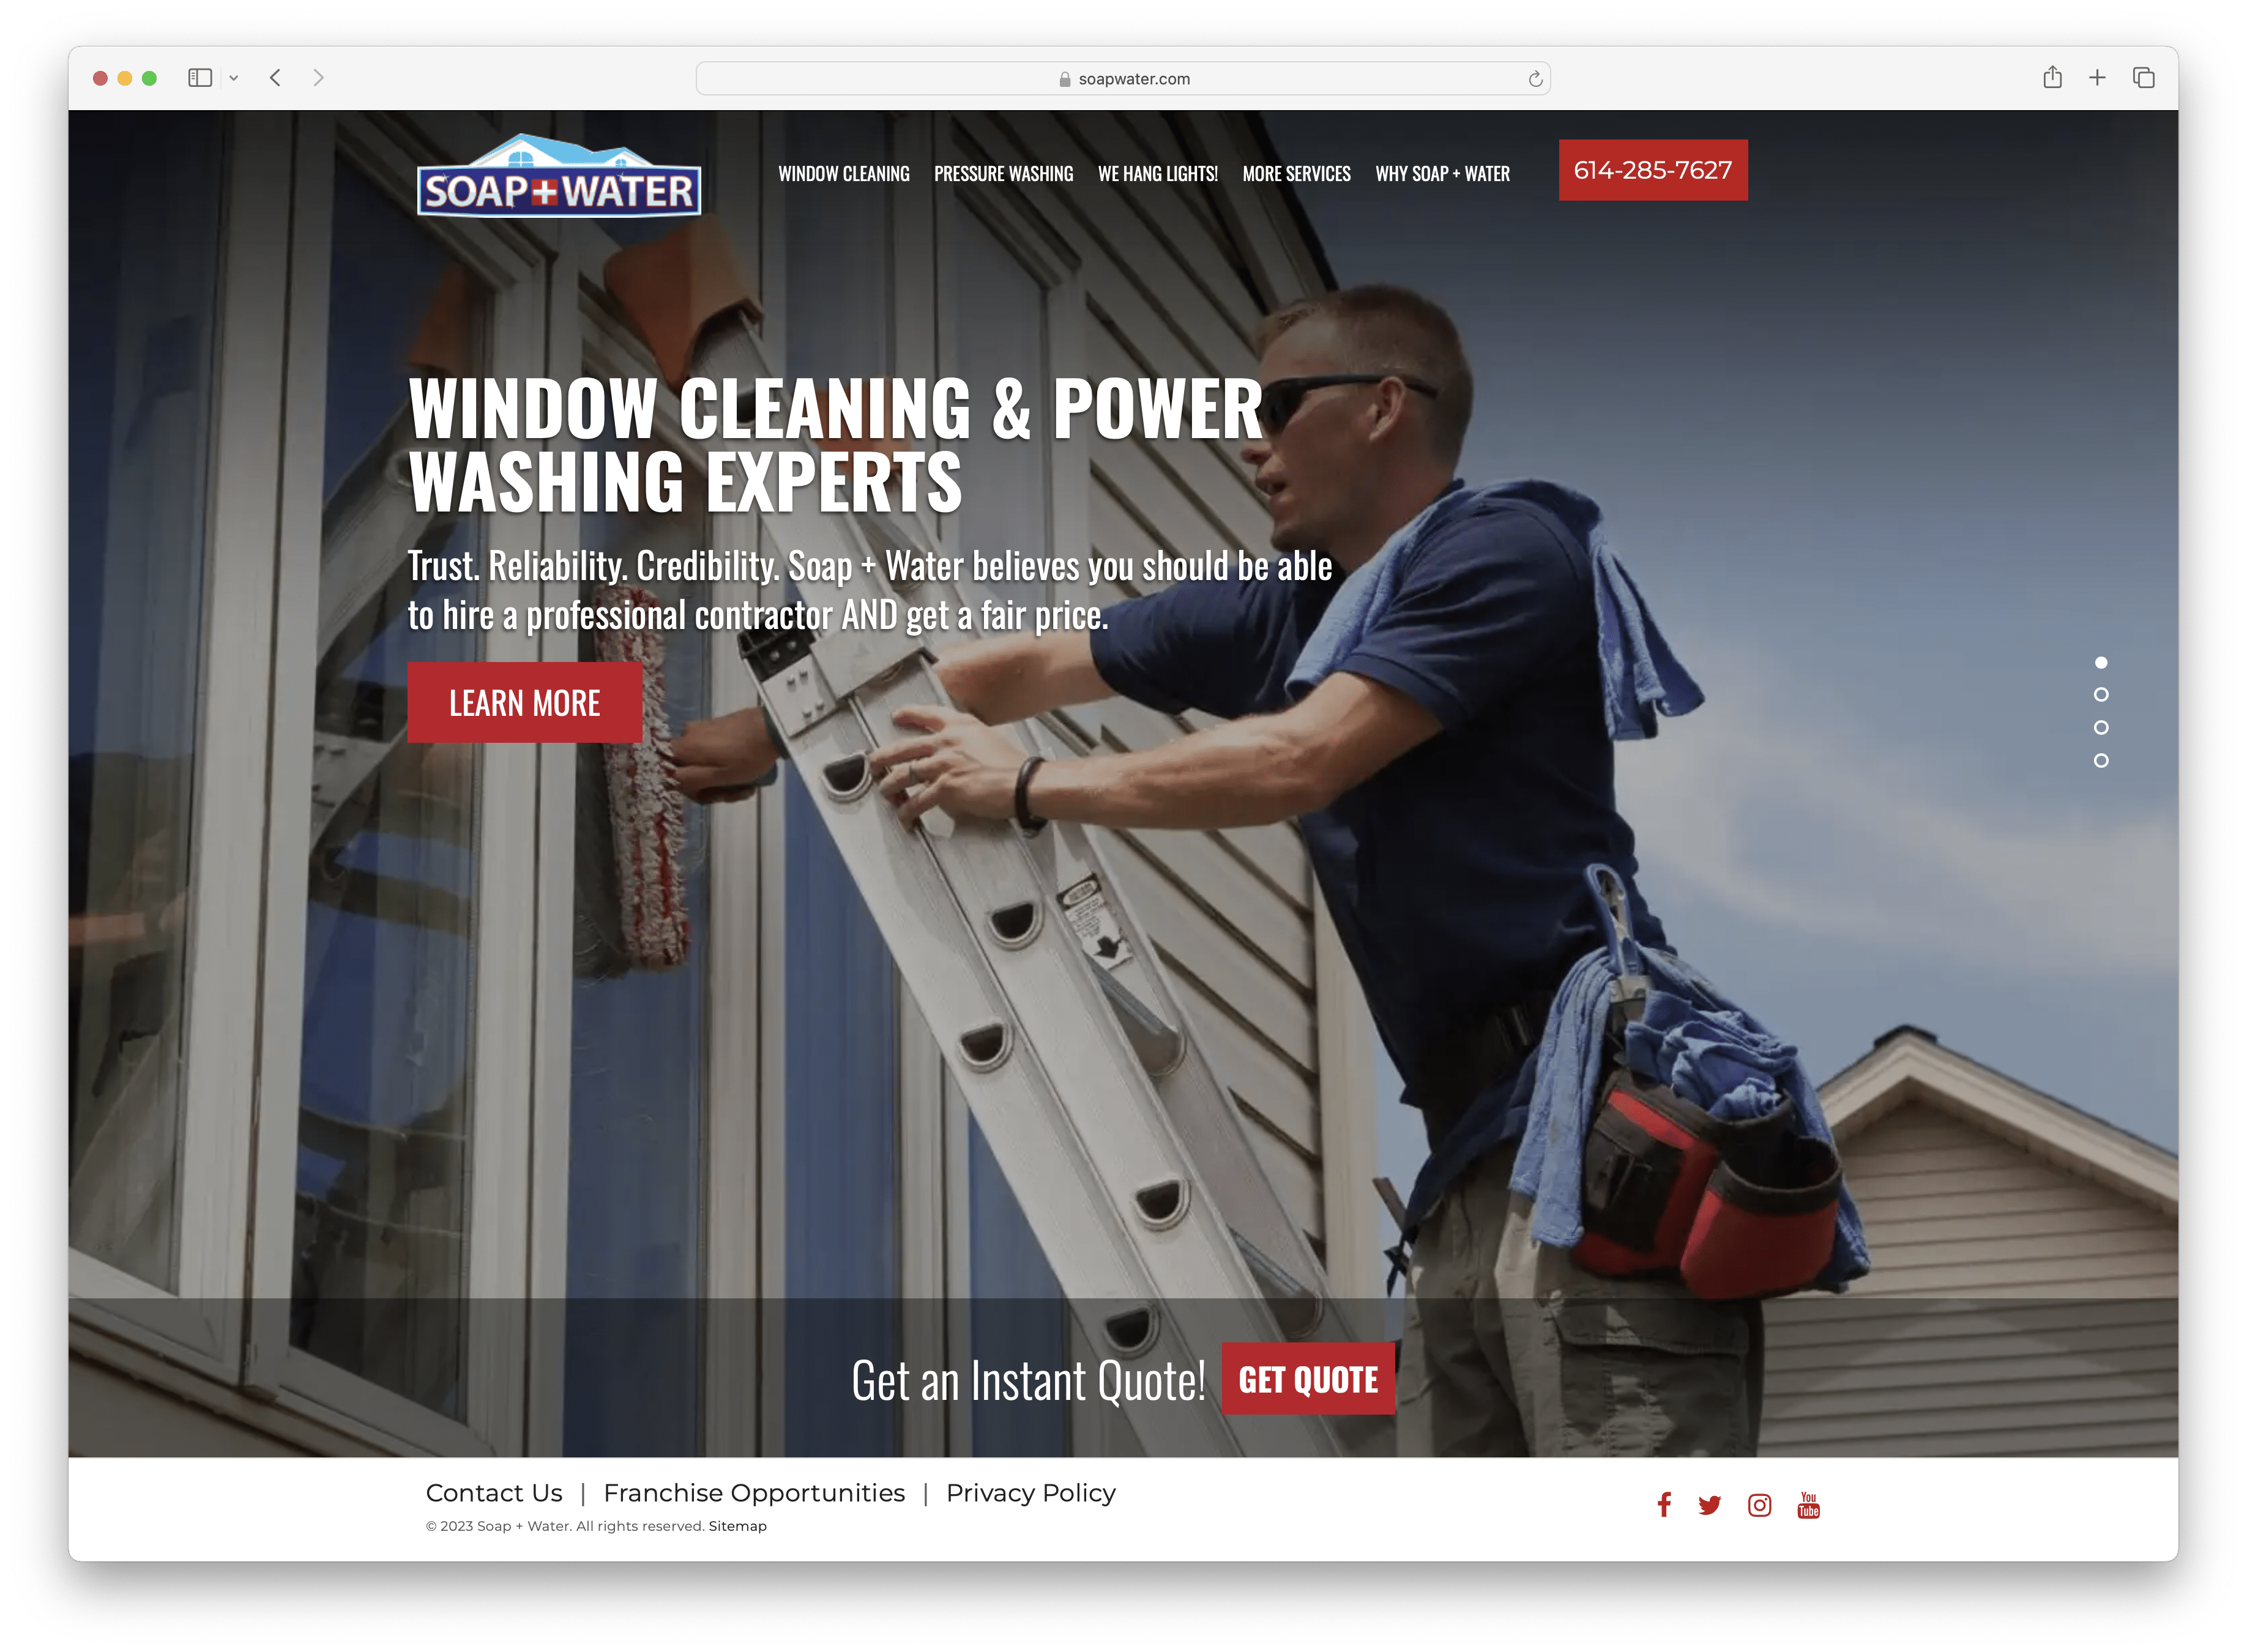 Sabão + Água - site de limpeza de janelas e lavagem potente